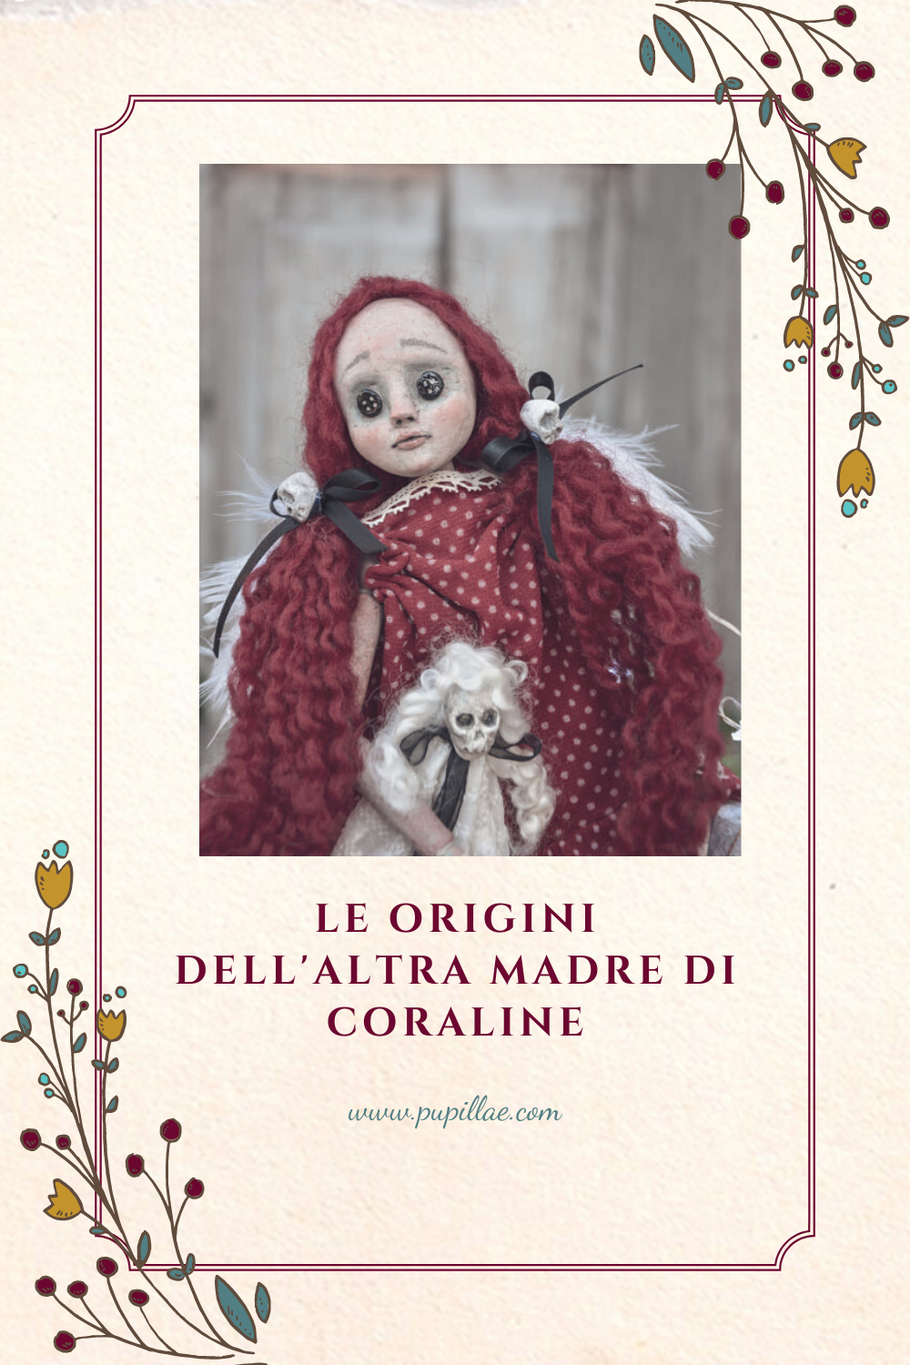 Le origini dell'altra madre di Coraline. - Pupillae Art Dolls